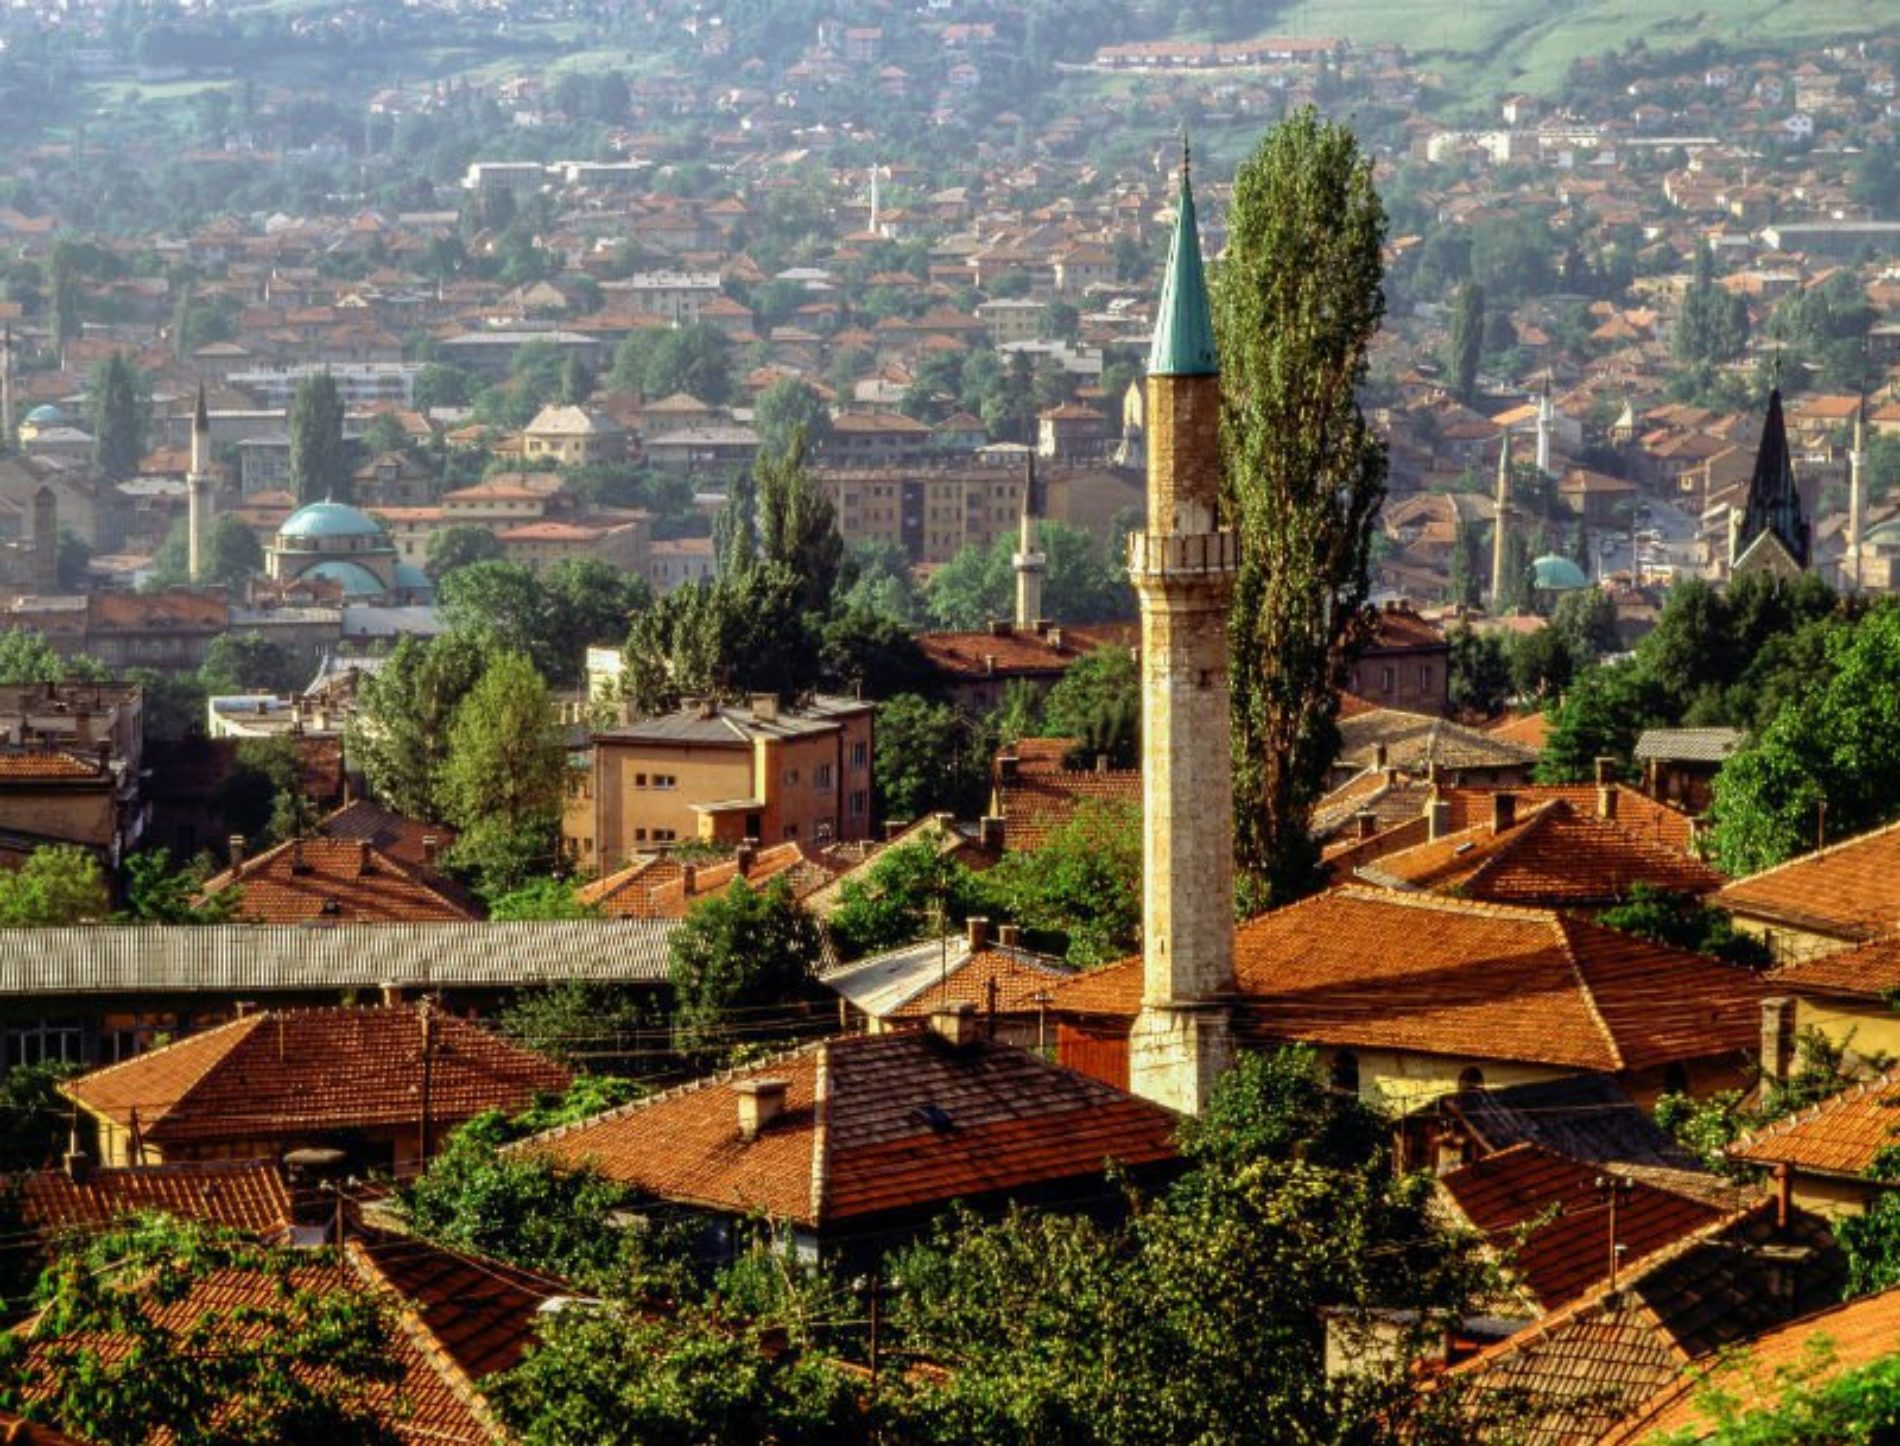 48 sati u Sarajevu: 10 stvari koje morate vidjeti i probati u bosanskom gradu heroju